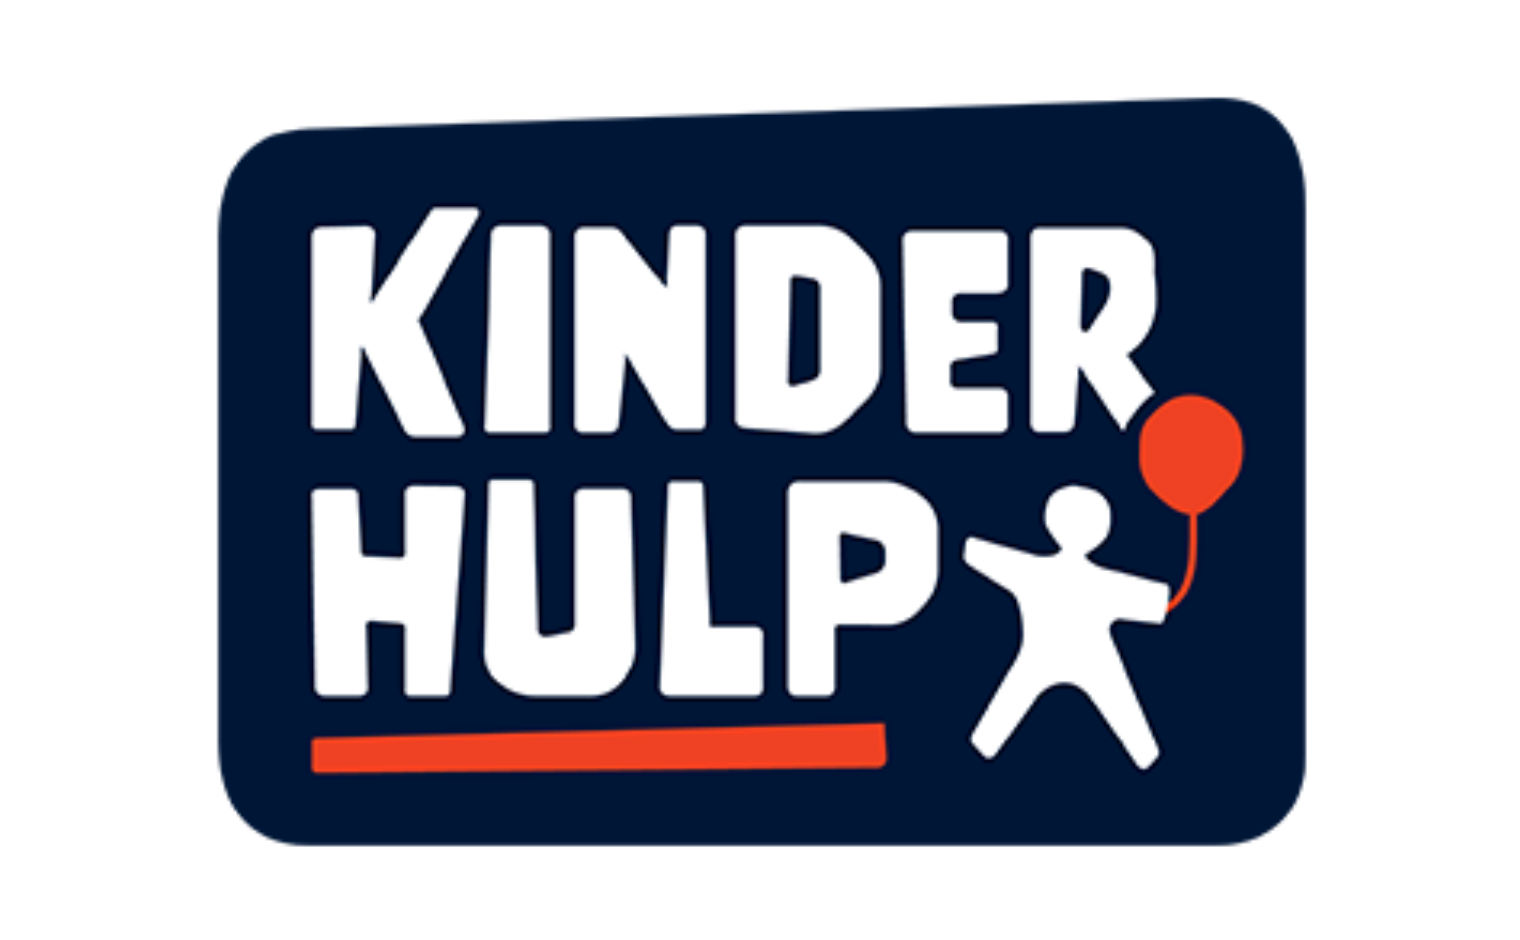 Logo van Nationaal Fonds Kinderhulp